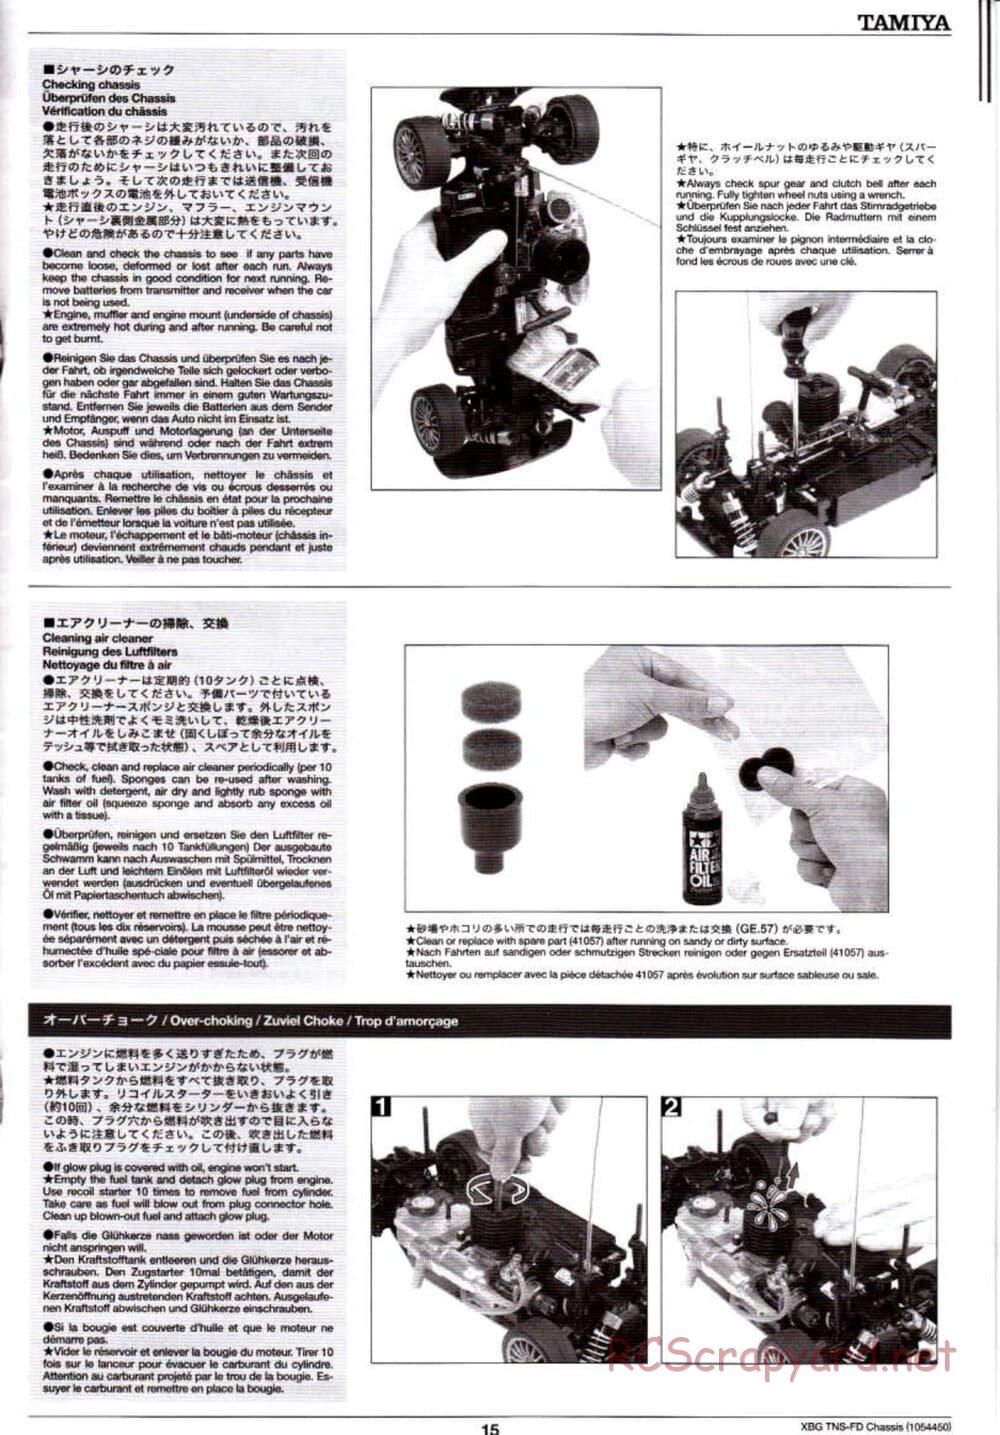 Tamiya - TNS-FD Chassis - Manual - Page 15